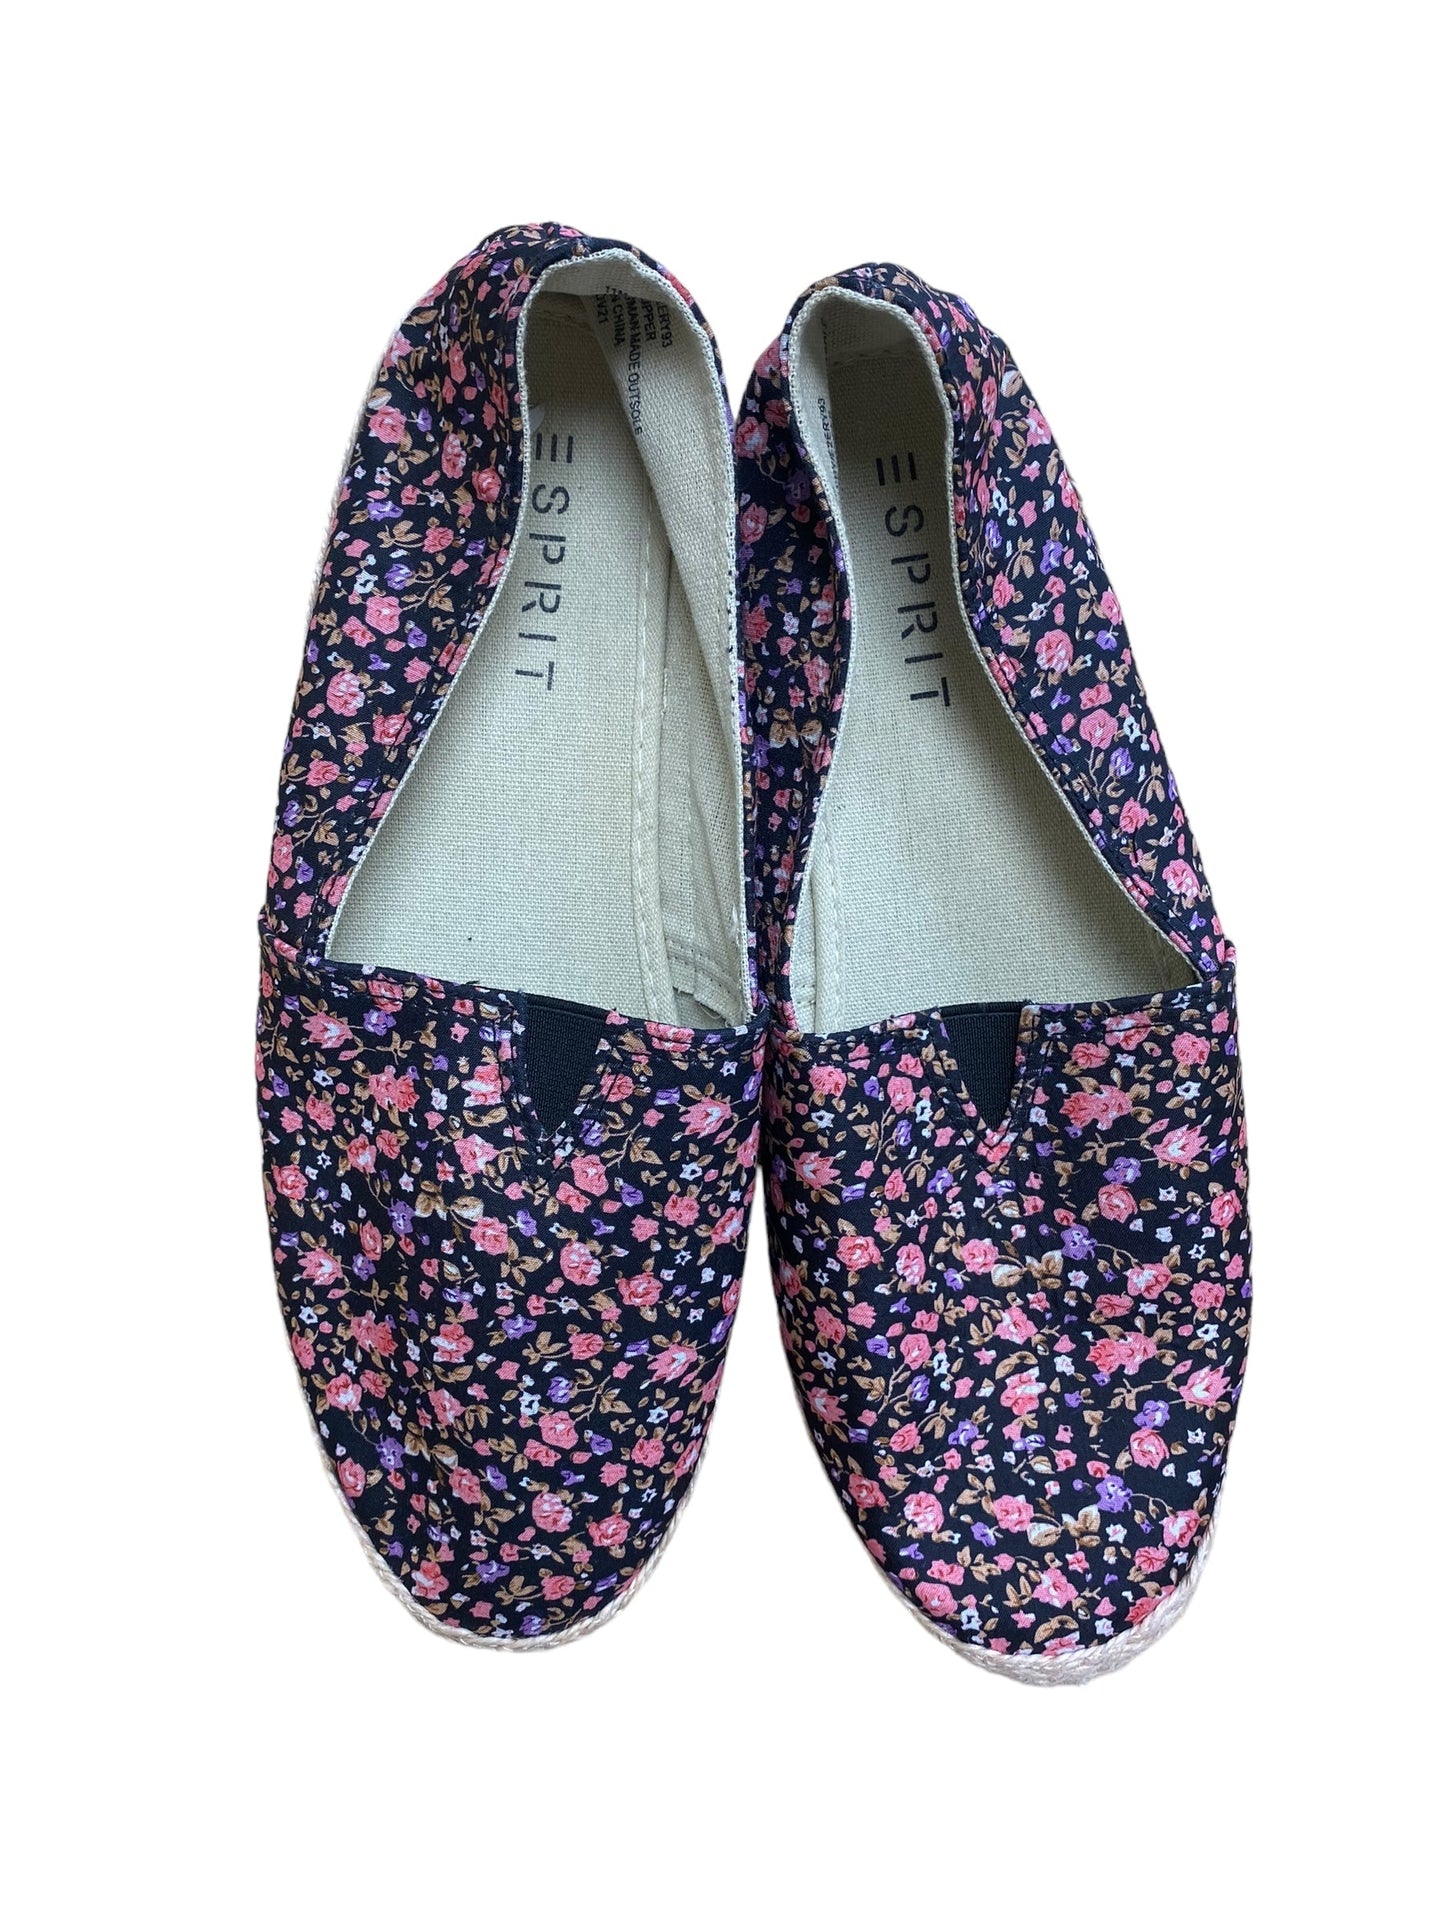 Floral Print Shoes Flats Esprit, Size 11